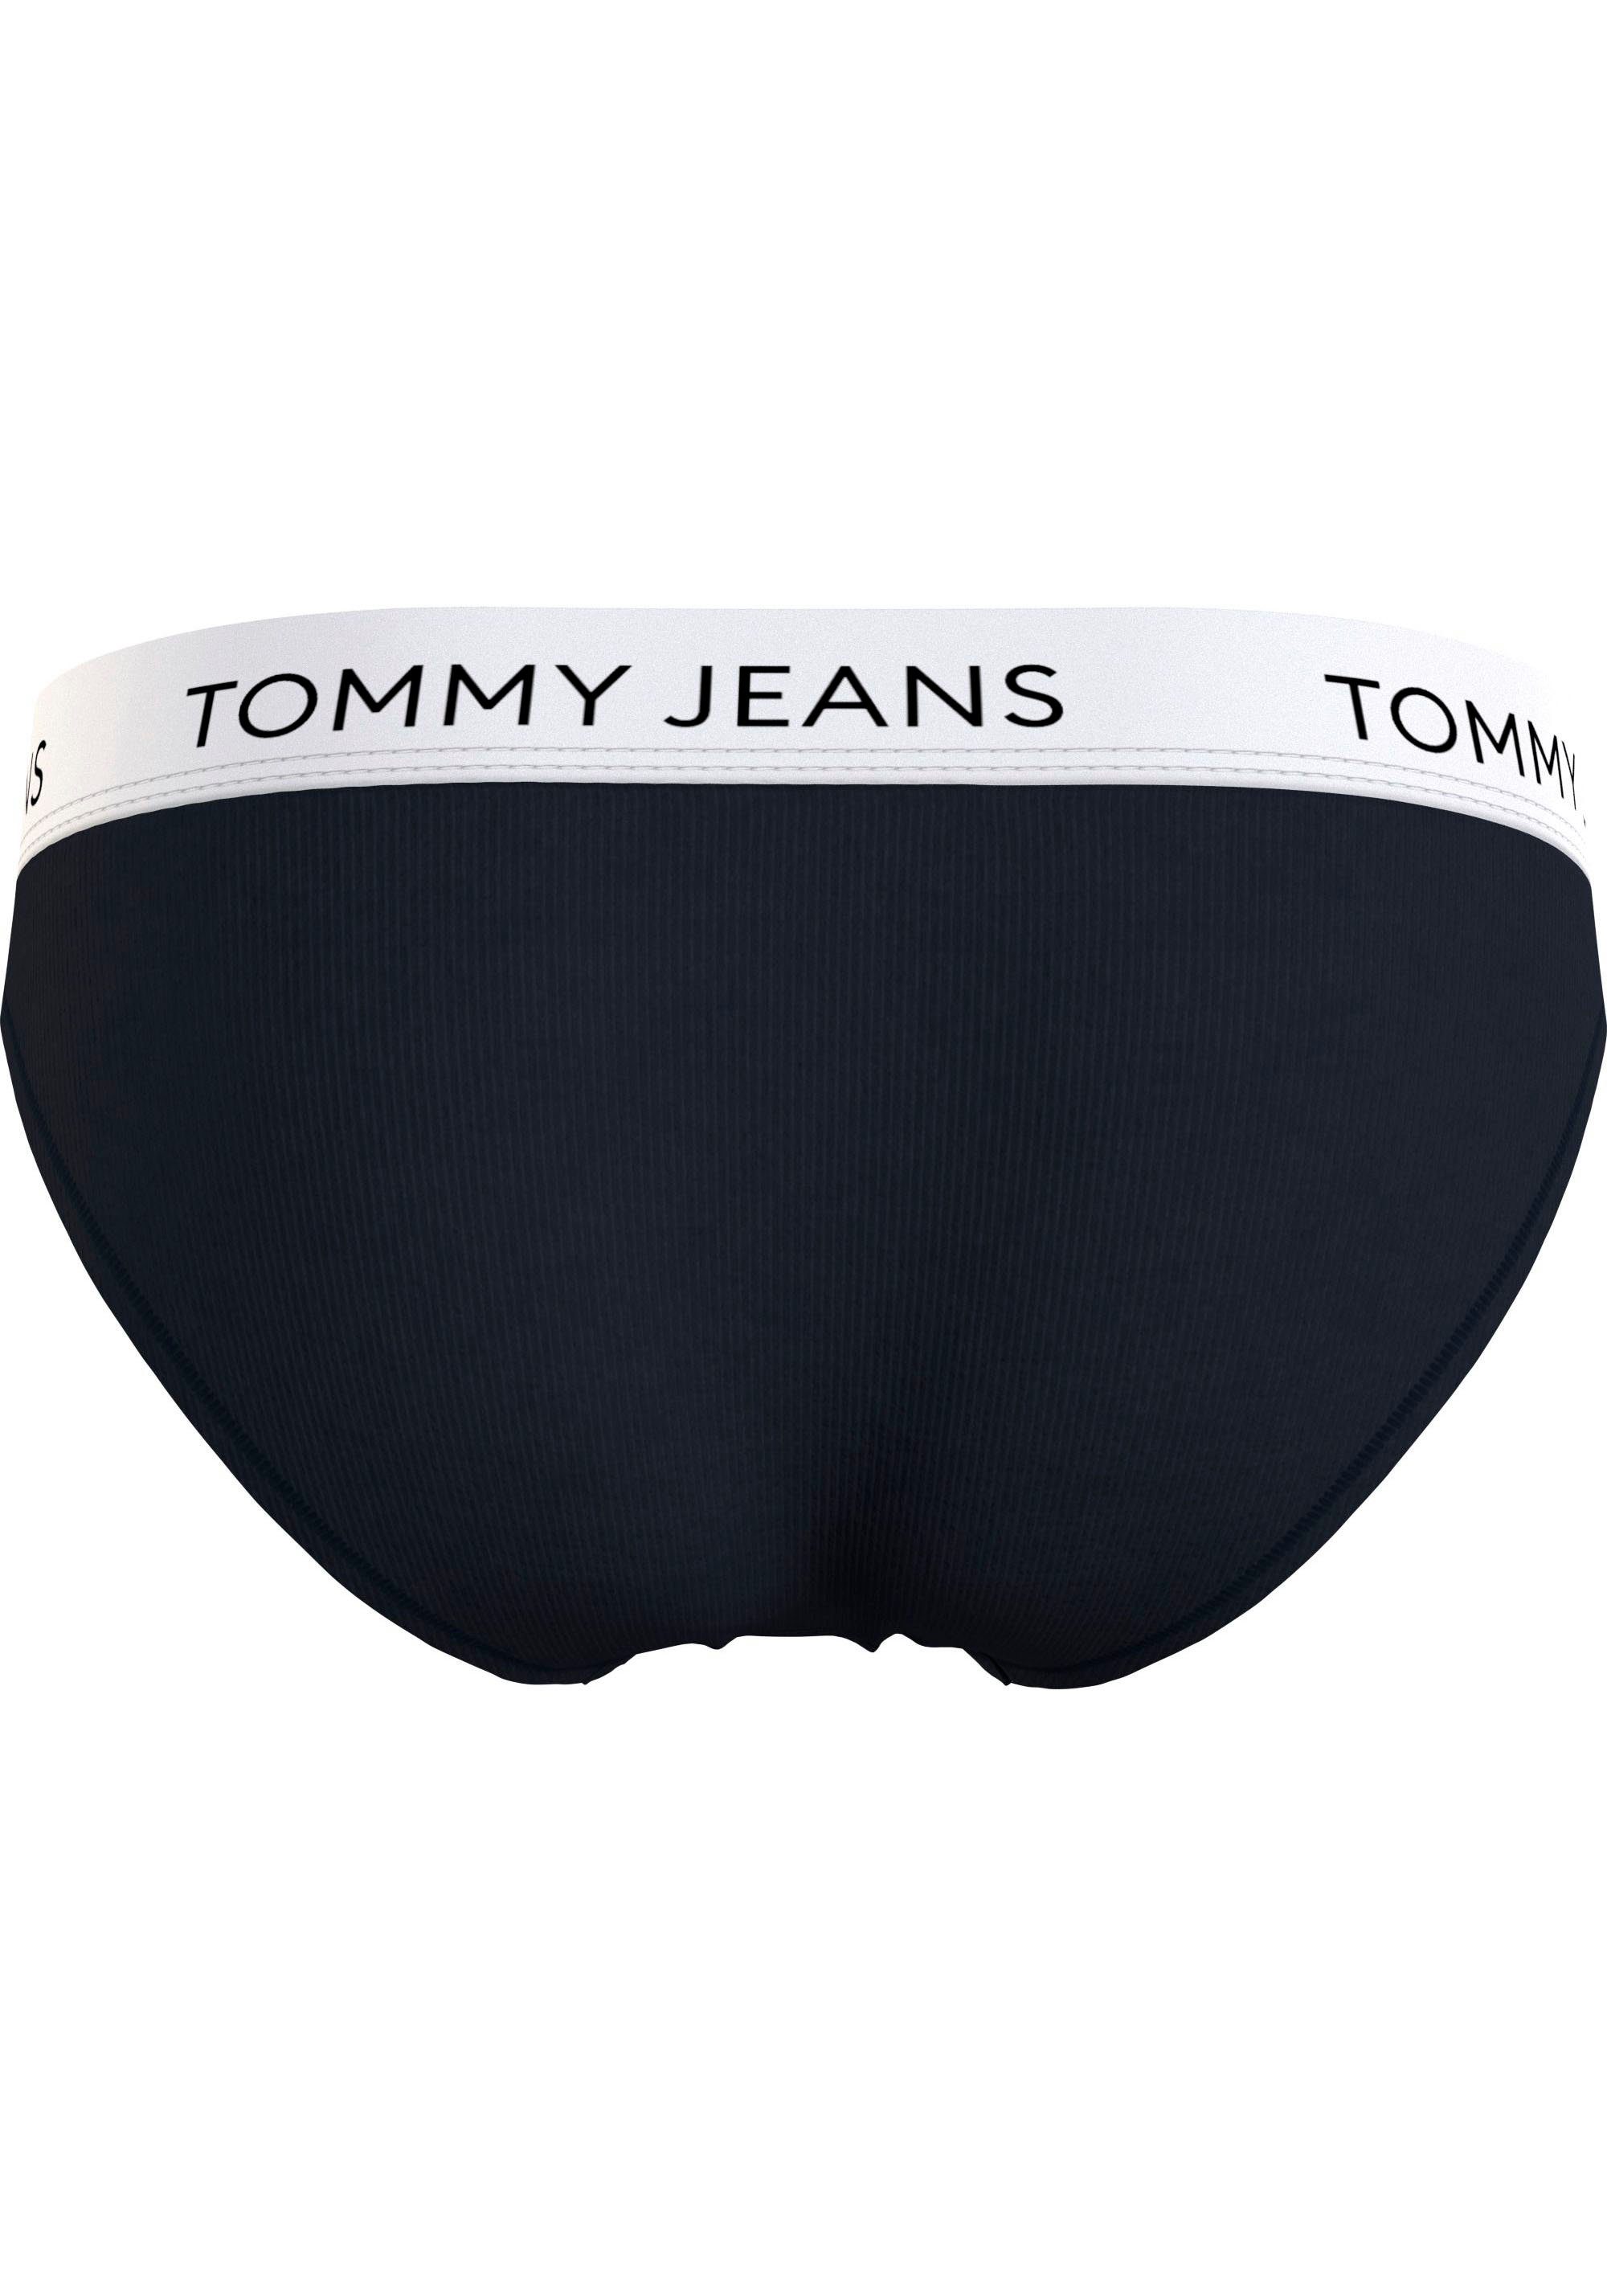 Tommy Hilfiger Underwear Bikinislip BIKINI mit Bund Black elastischem